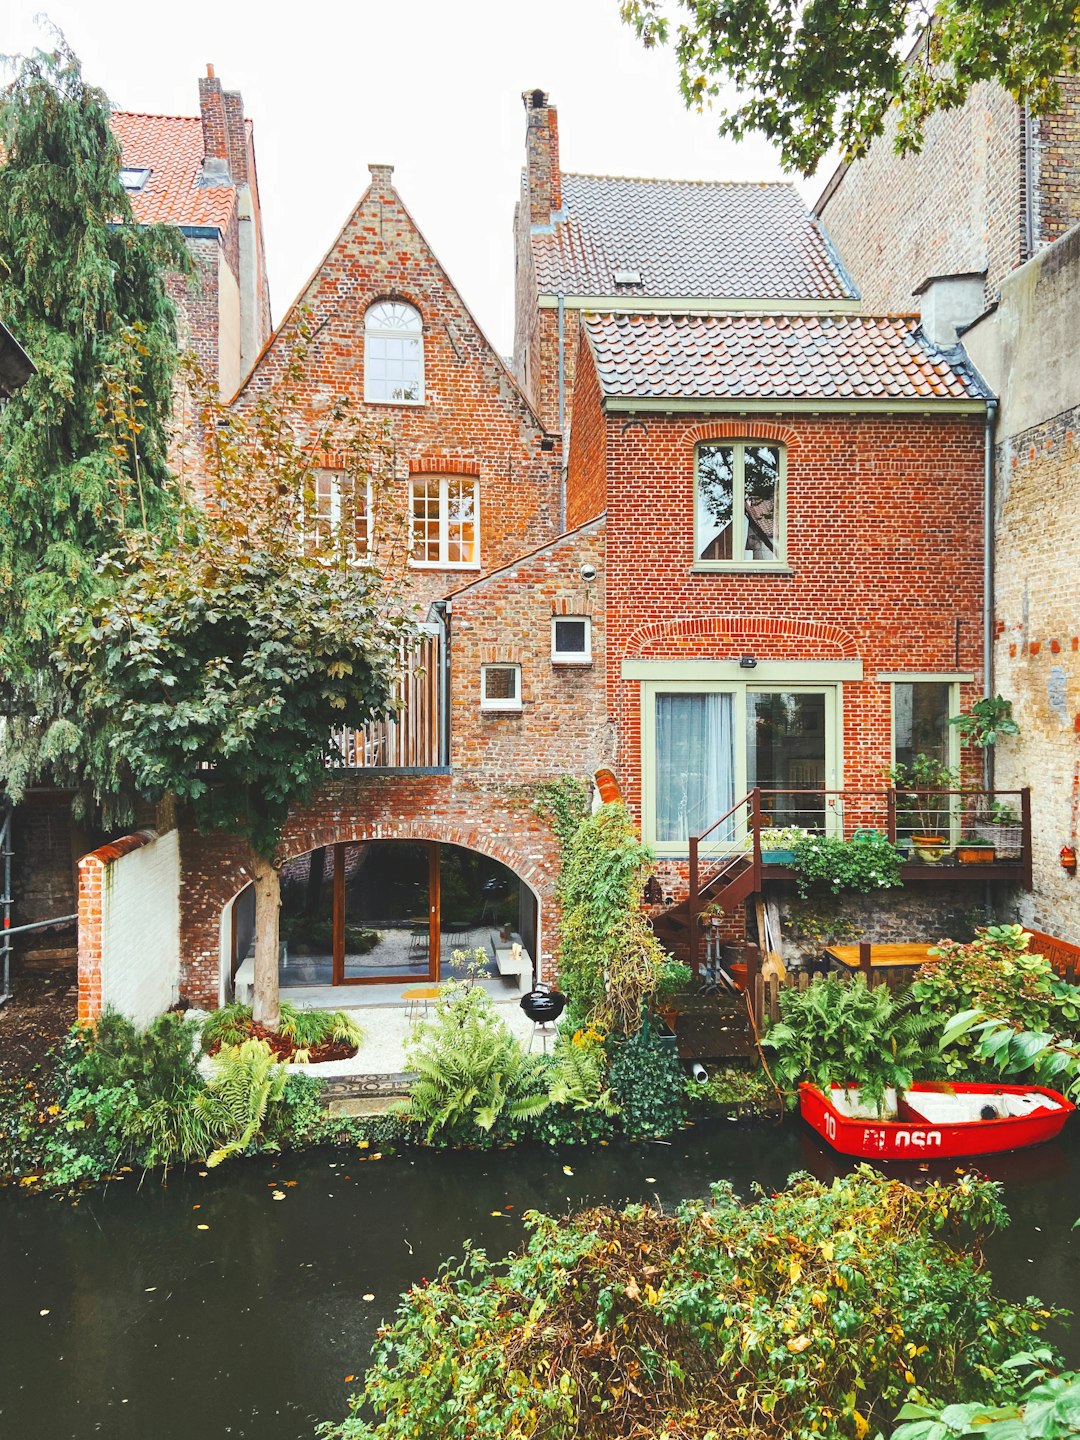 Waterway photo spot Bruges Kortrijk